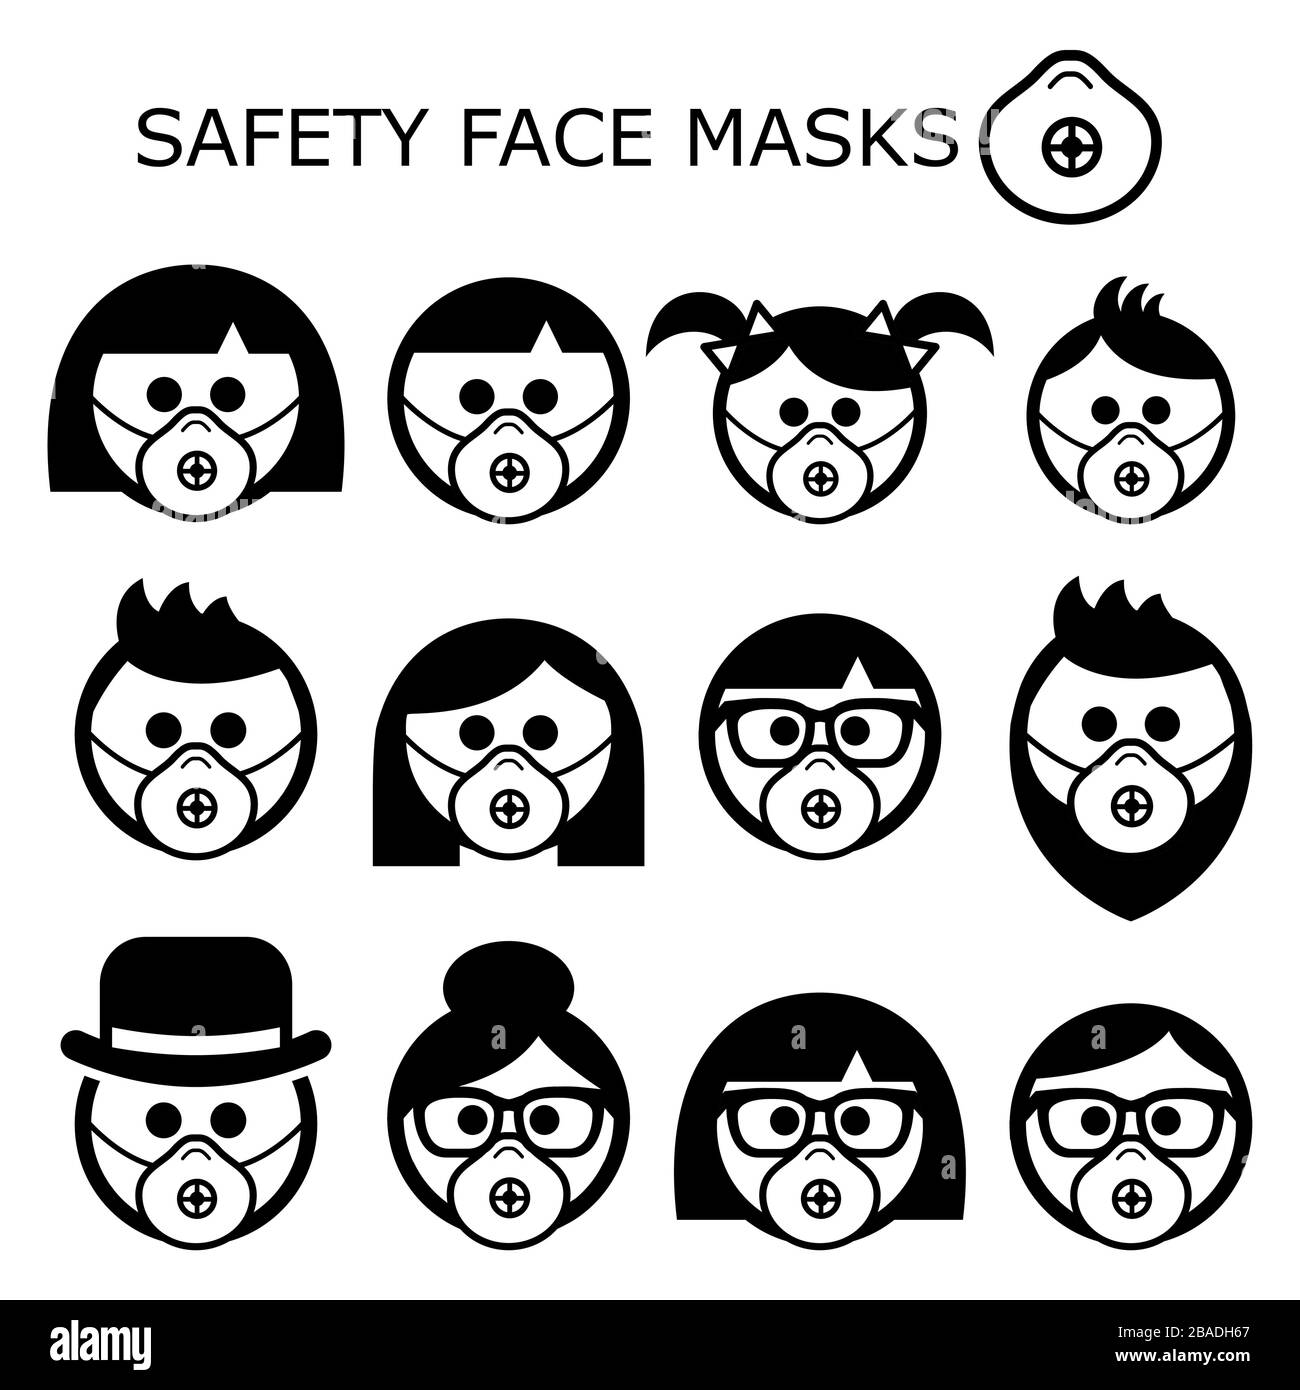 Menschen mit Sicherheitsmasken Vektorsymbole - Erwachsene, Kinder, Senioren, Masken, die getragen werden, um Krankheiten, Viren, Luftverschmutzung und kontaminierte Luft zu verhindern Stock Vektor